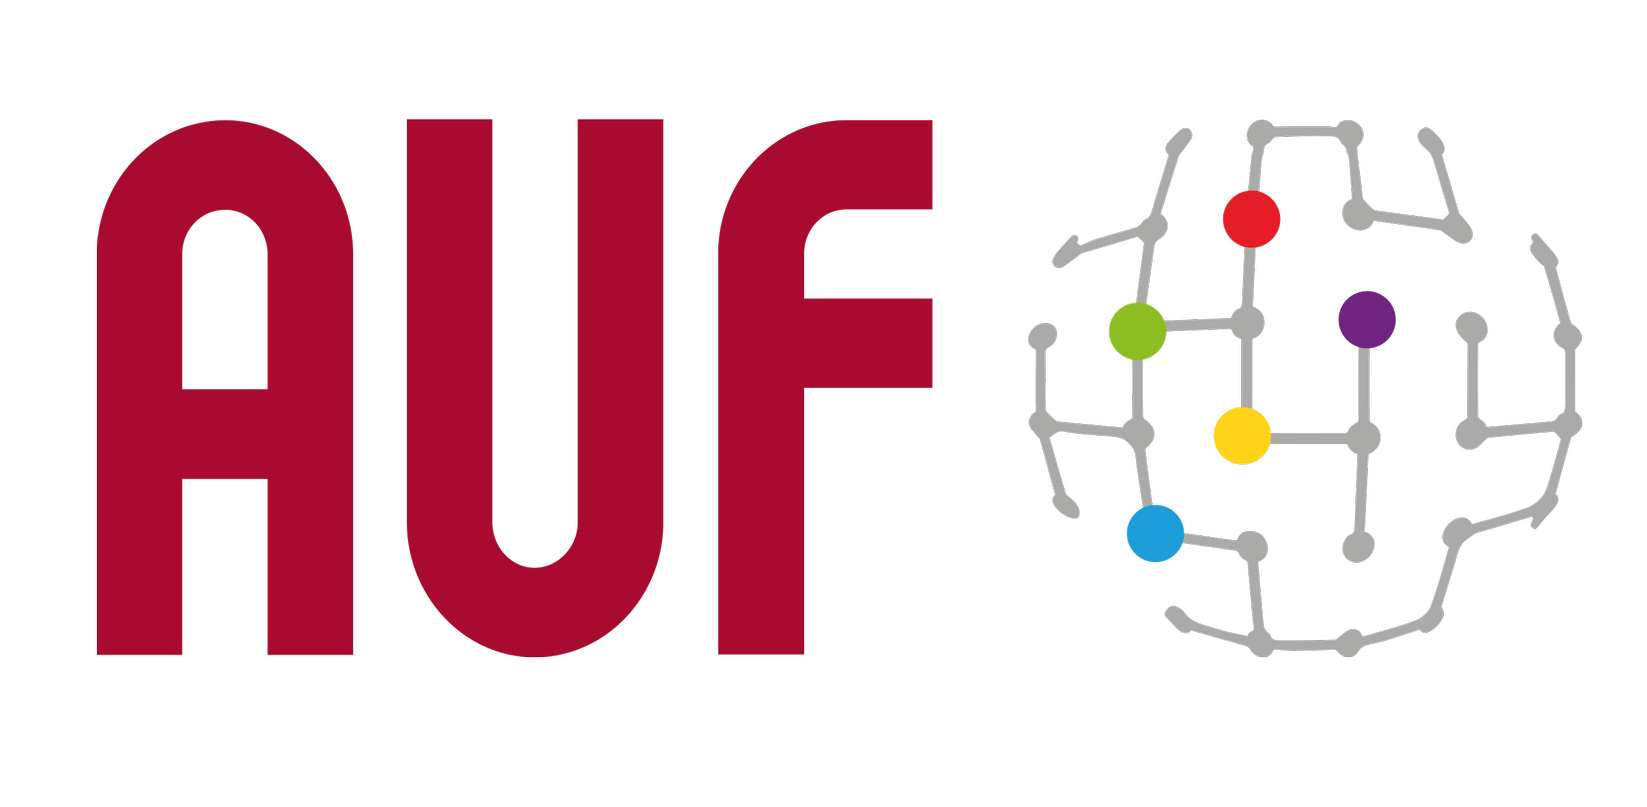 Avis d’appel à candidatures pour la 3ème édition du Programme de mobilités AUF pour chercheurs francophones du Sud